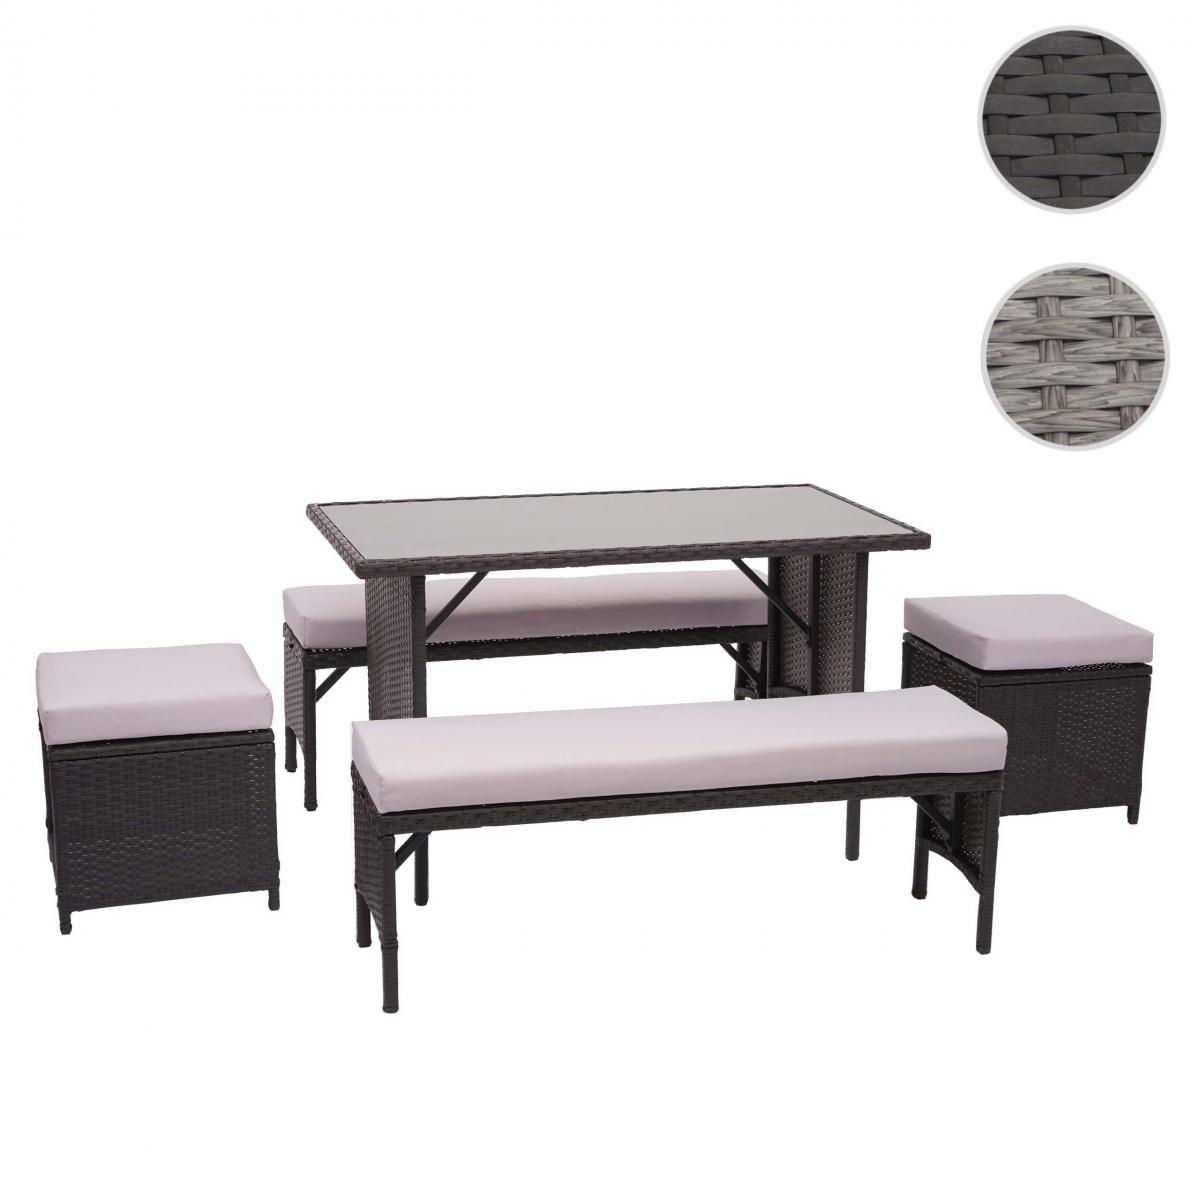 Mendler - Garniture en polyrotin HWC-G16, jardin, gastronomie, 2x banc, table, 2x tabouret ~ noir, coussin gris clair - Ensembles tables et chaises